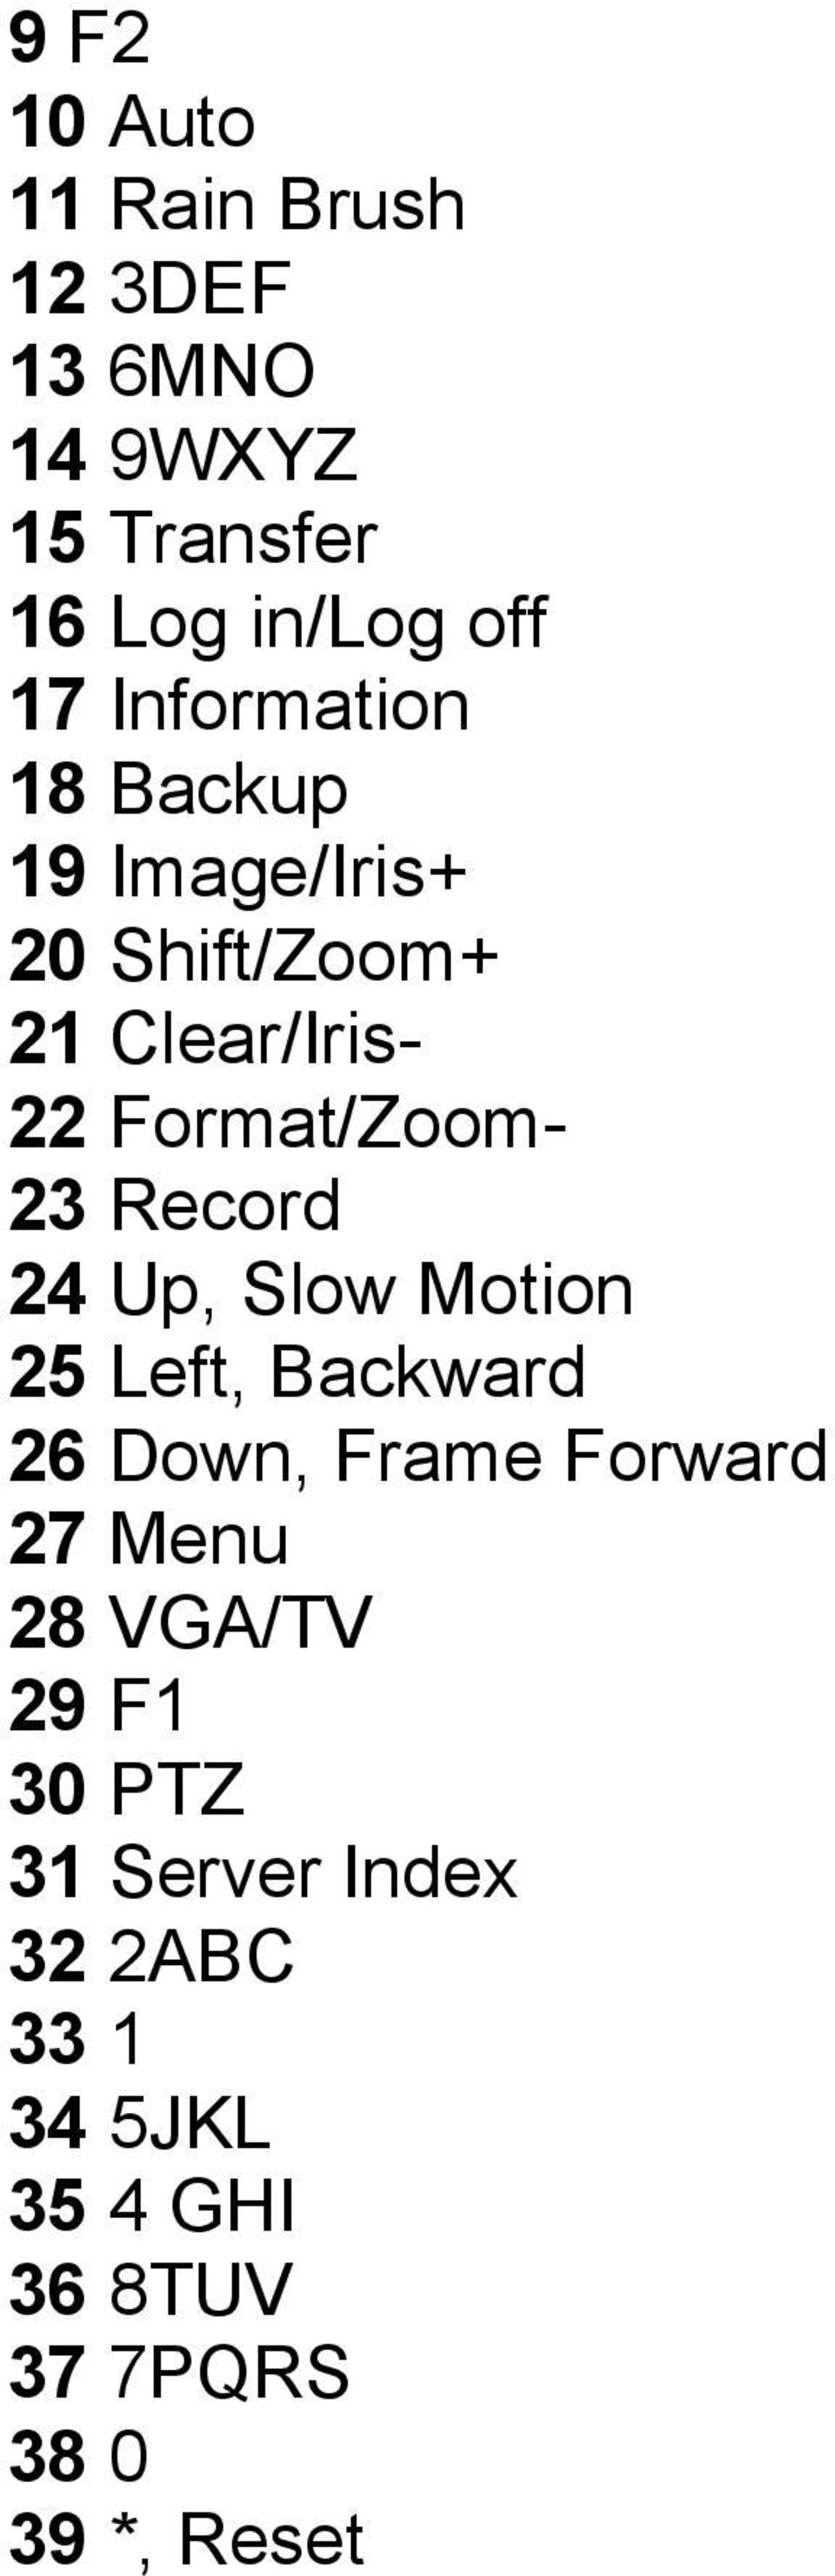 Record 24 Up, Slow Motion 25 Left, Backward 26 Down, Frame Forward 27 Menu 28 VGA/TV